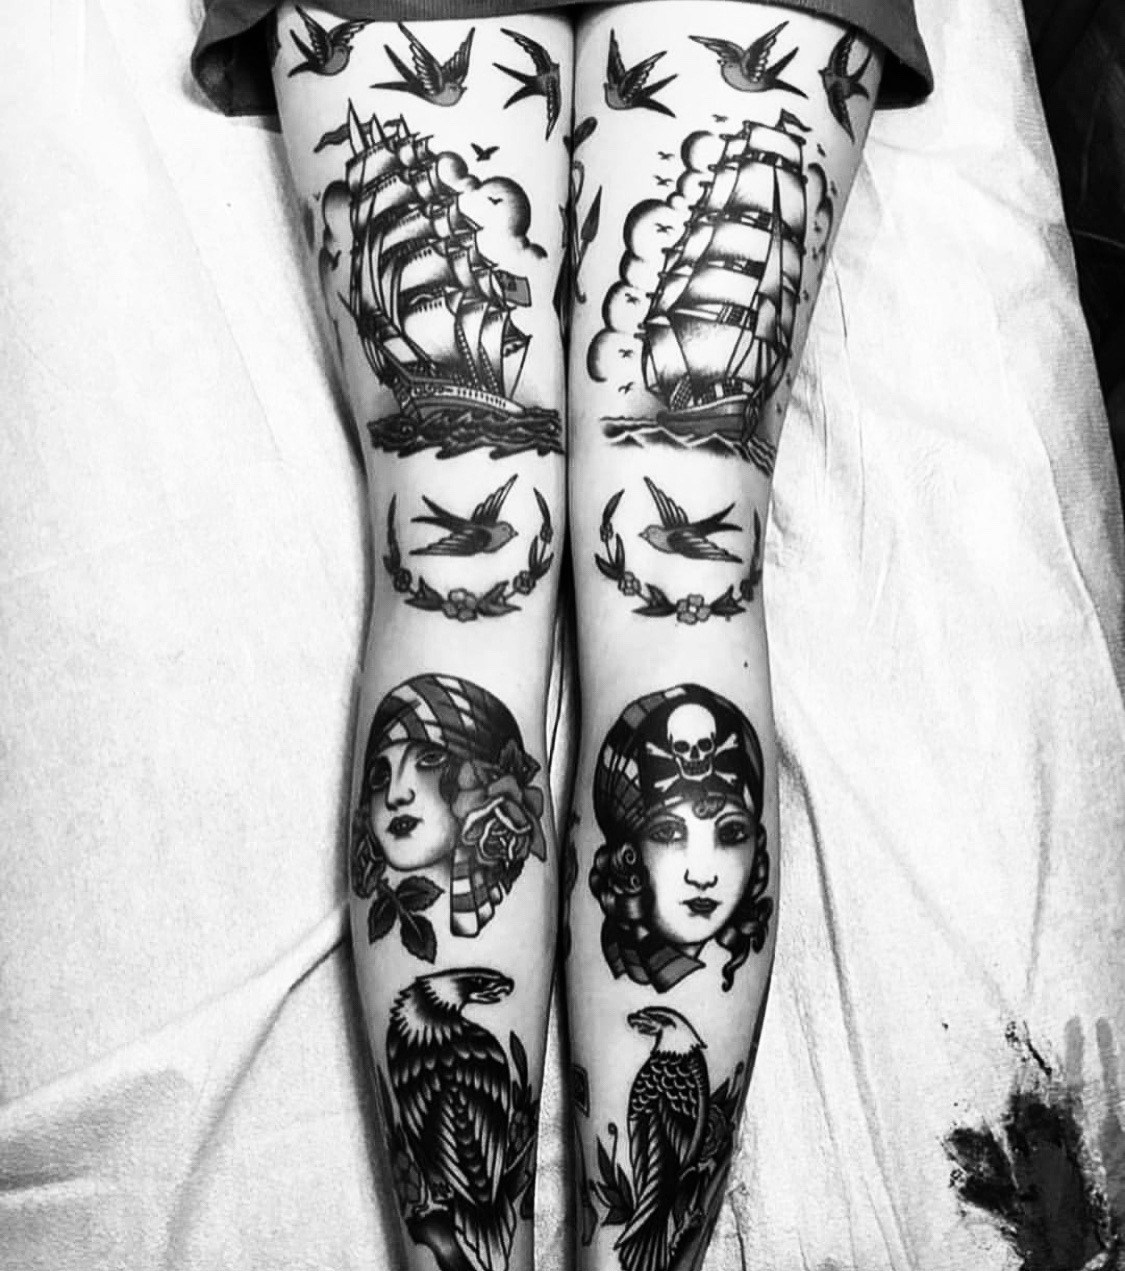 XXX mccek:Tatuaggi folli #42✍🏻 photo